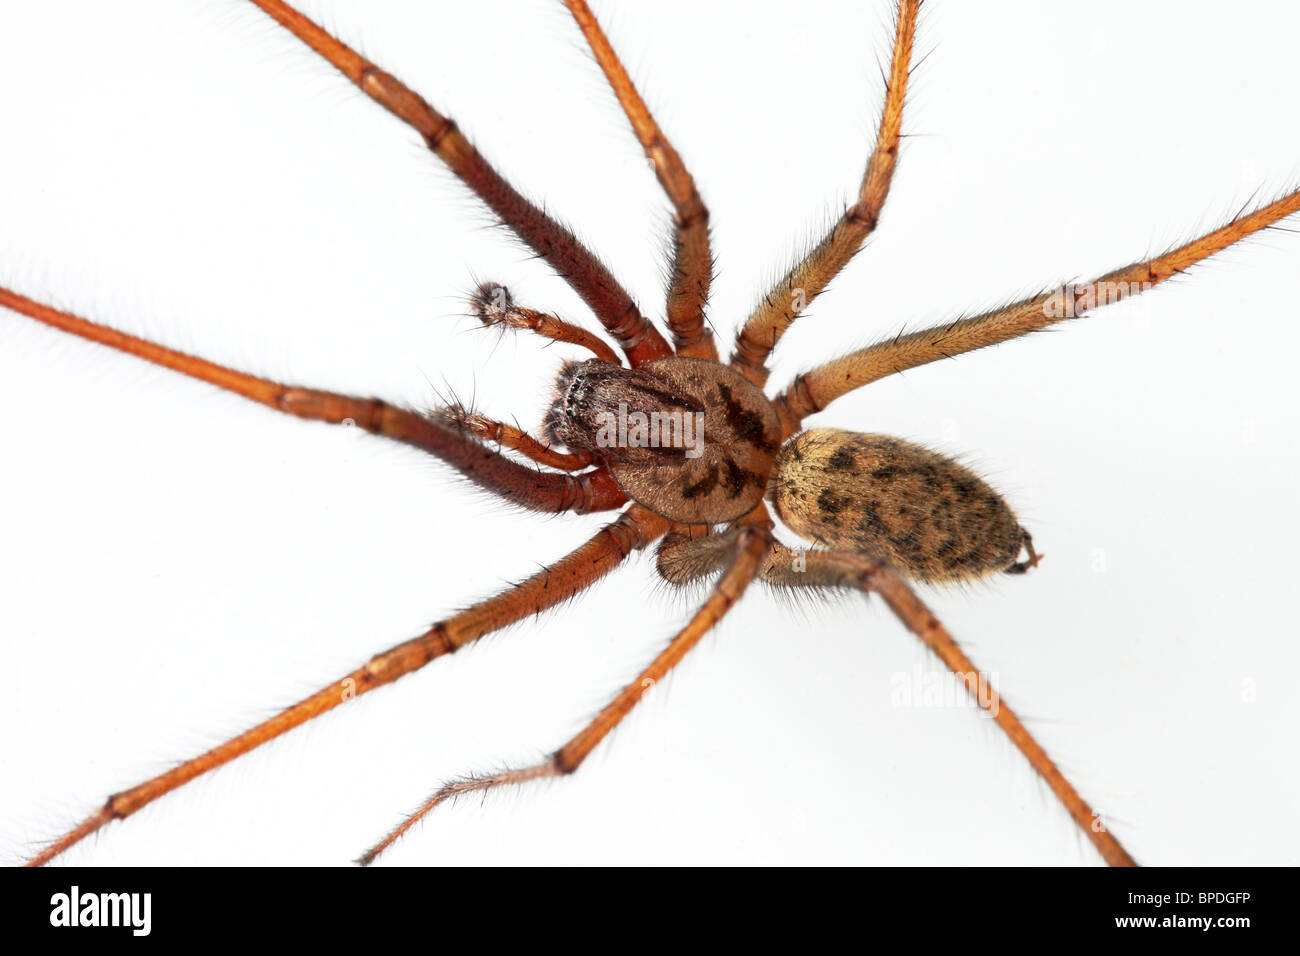 Gros plan d'une araignée (Eratigena duellicaon) a White Background, Royaume-Uni Banque D'Images